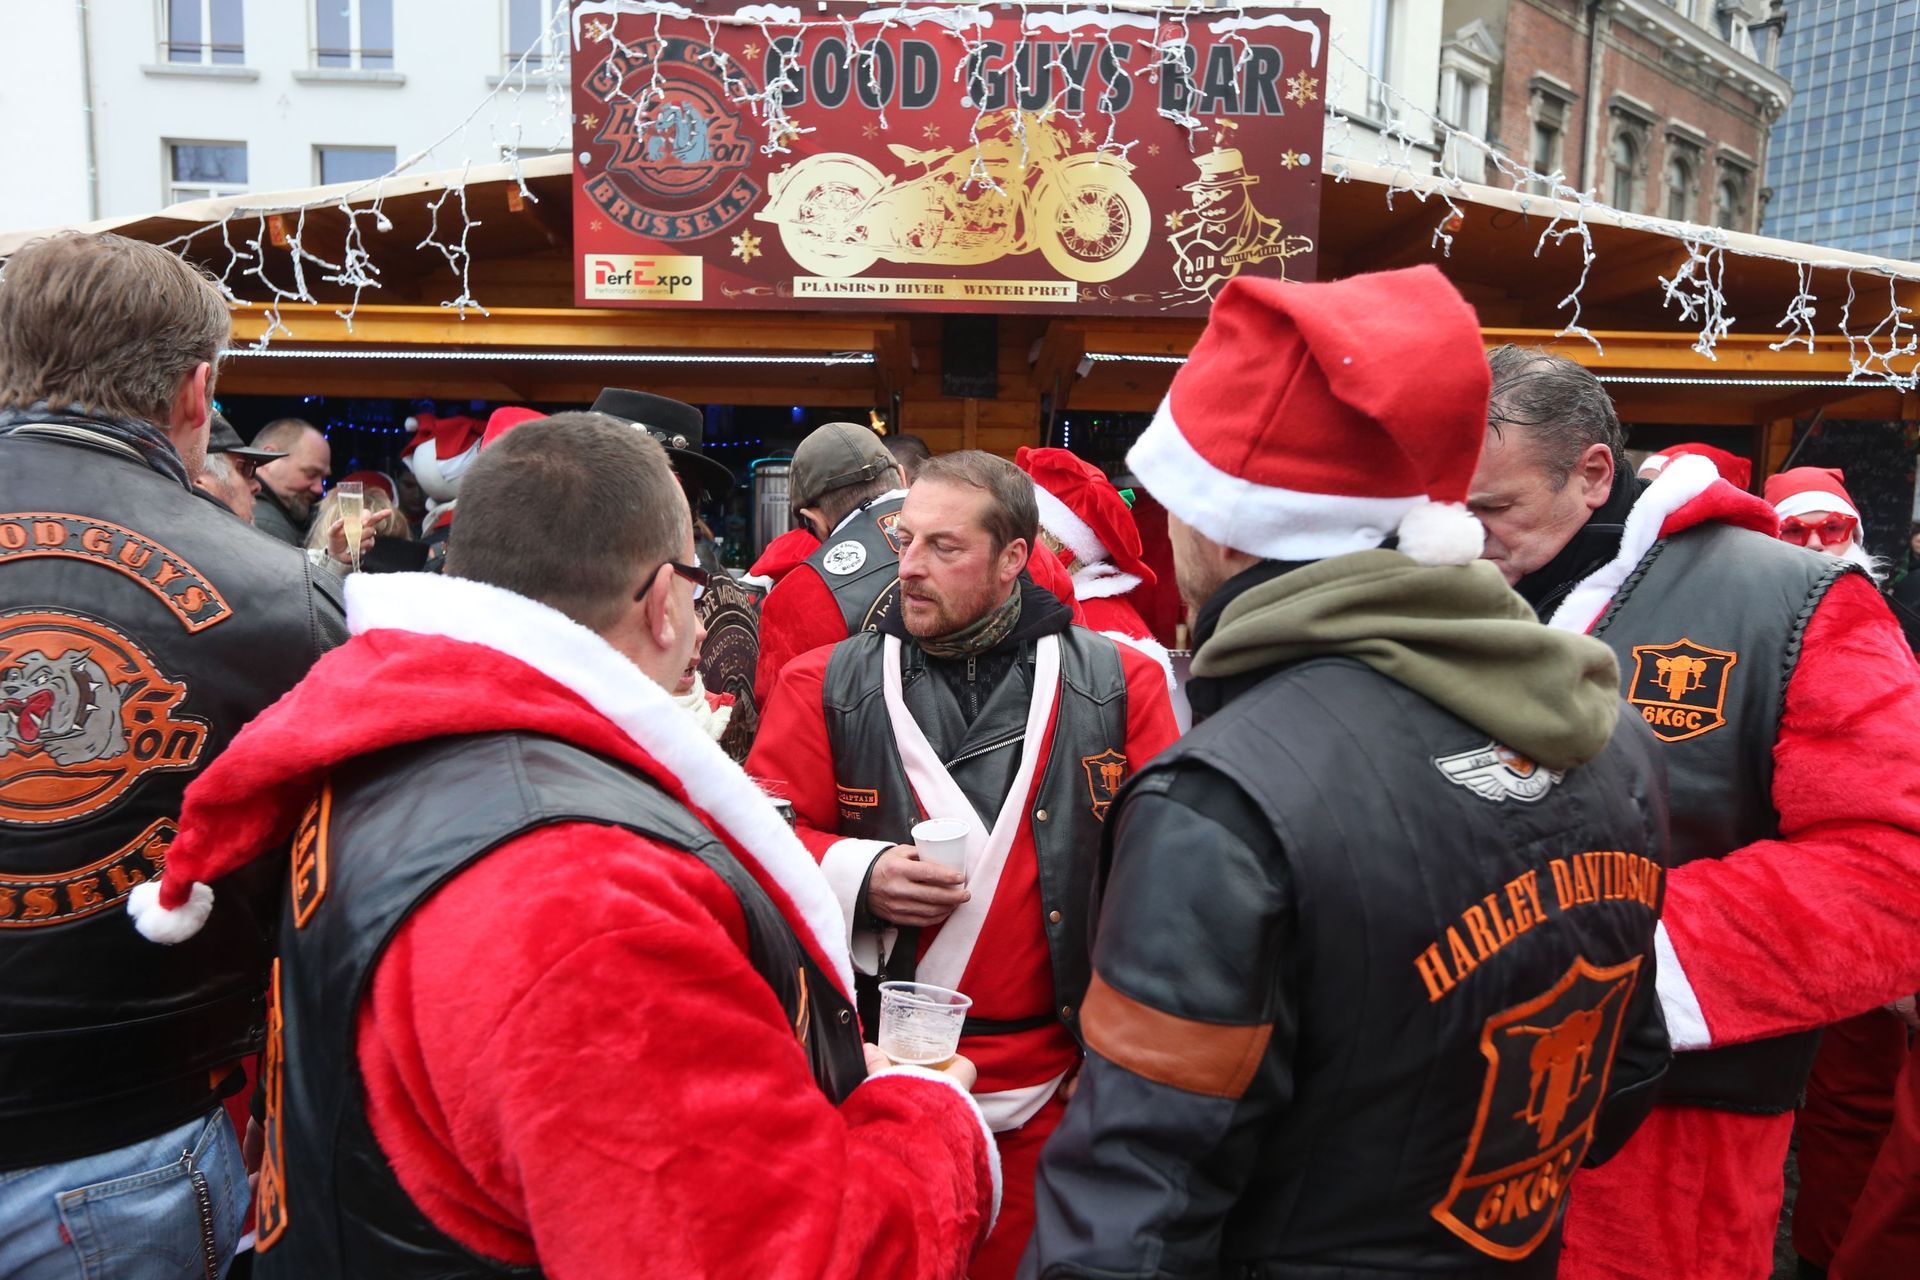 Quelques participants ont préféré arborer les couleurs Harley, et le chapeau de père Noël a suffi pour intégrer le défilé